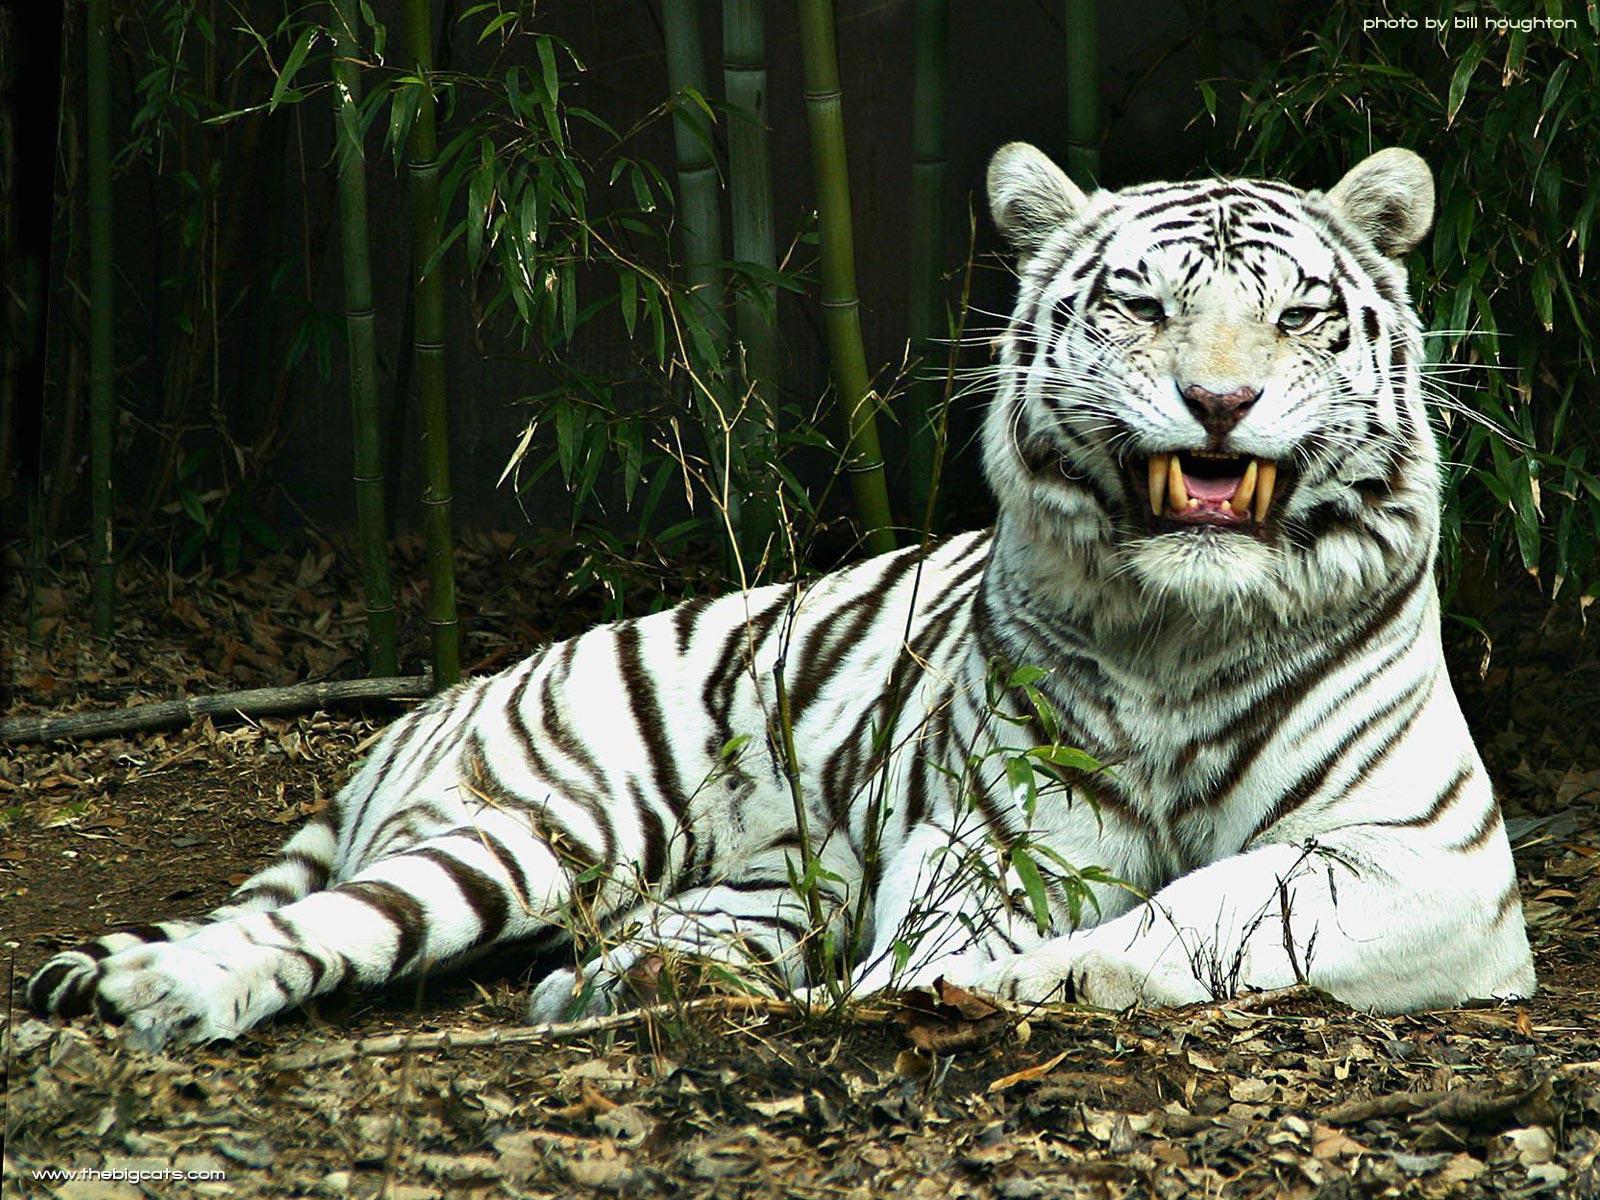 tiger wallpaper for desktop Search Engine